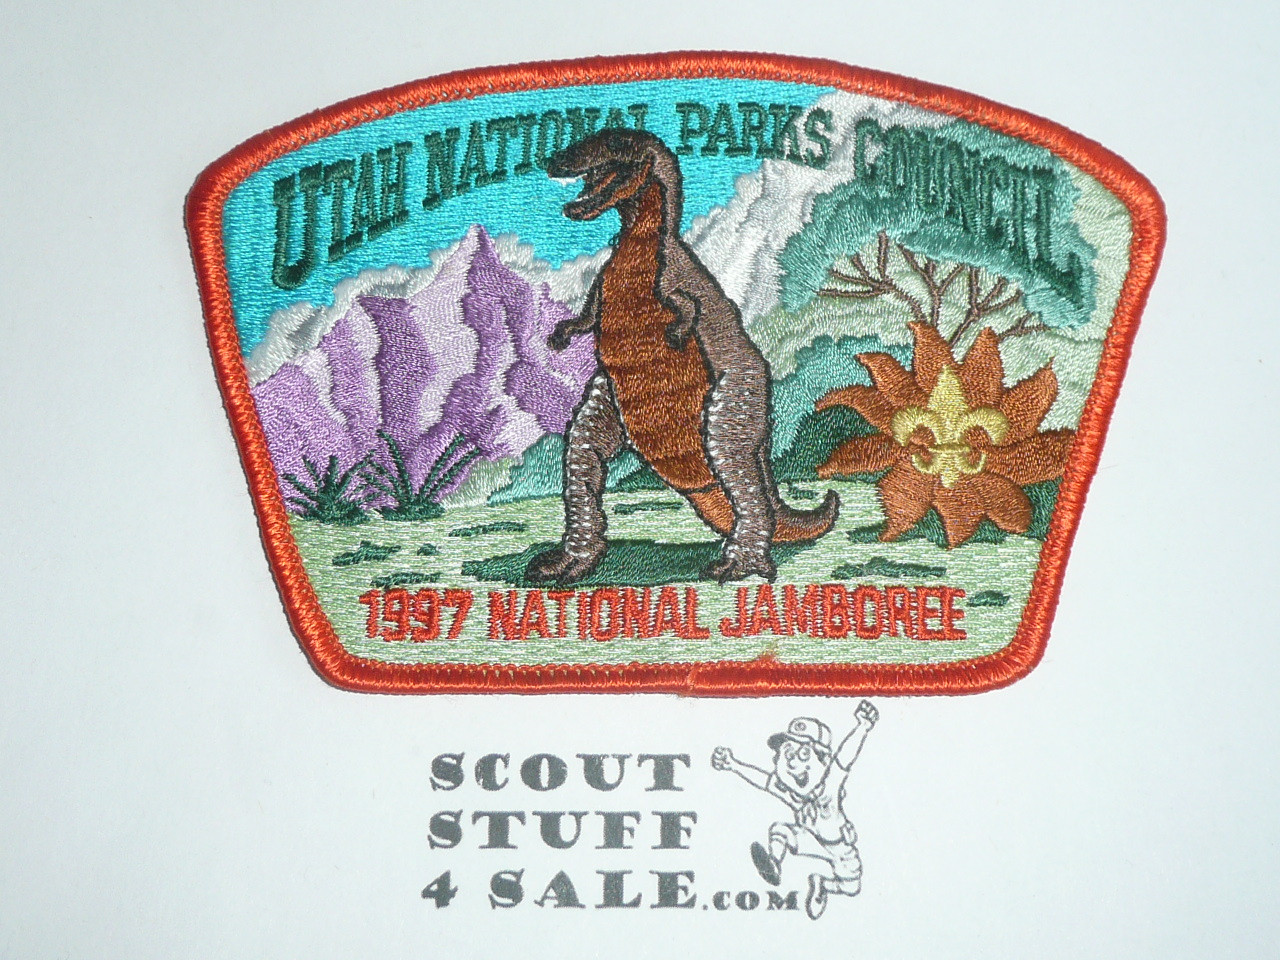 1997 National Jamboree JSP -Utah National Parks Council, orange bdr